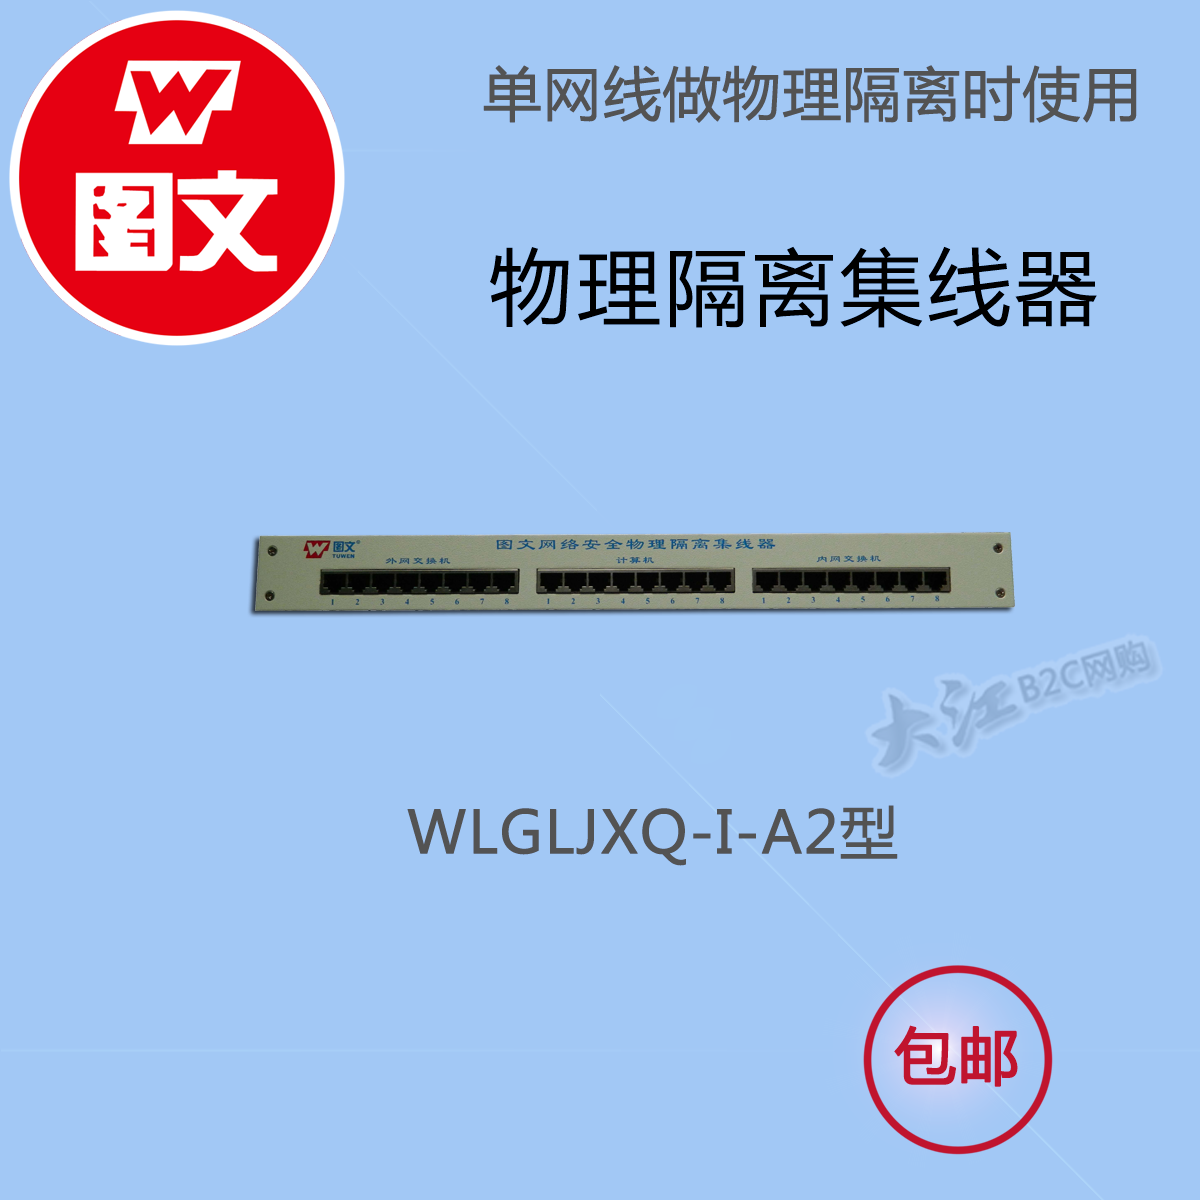 图文双硬盘网络物理隔离集器WLGLJXQ-I-A2，配合WLGLQ-II-L2使用